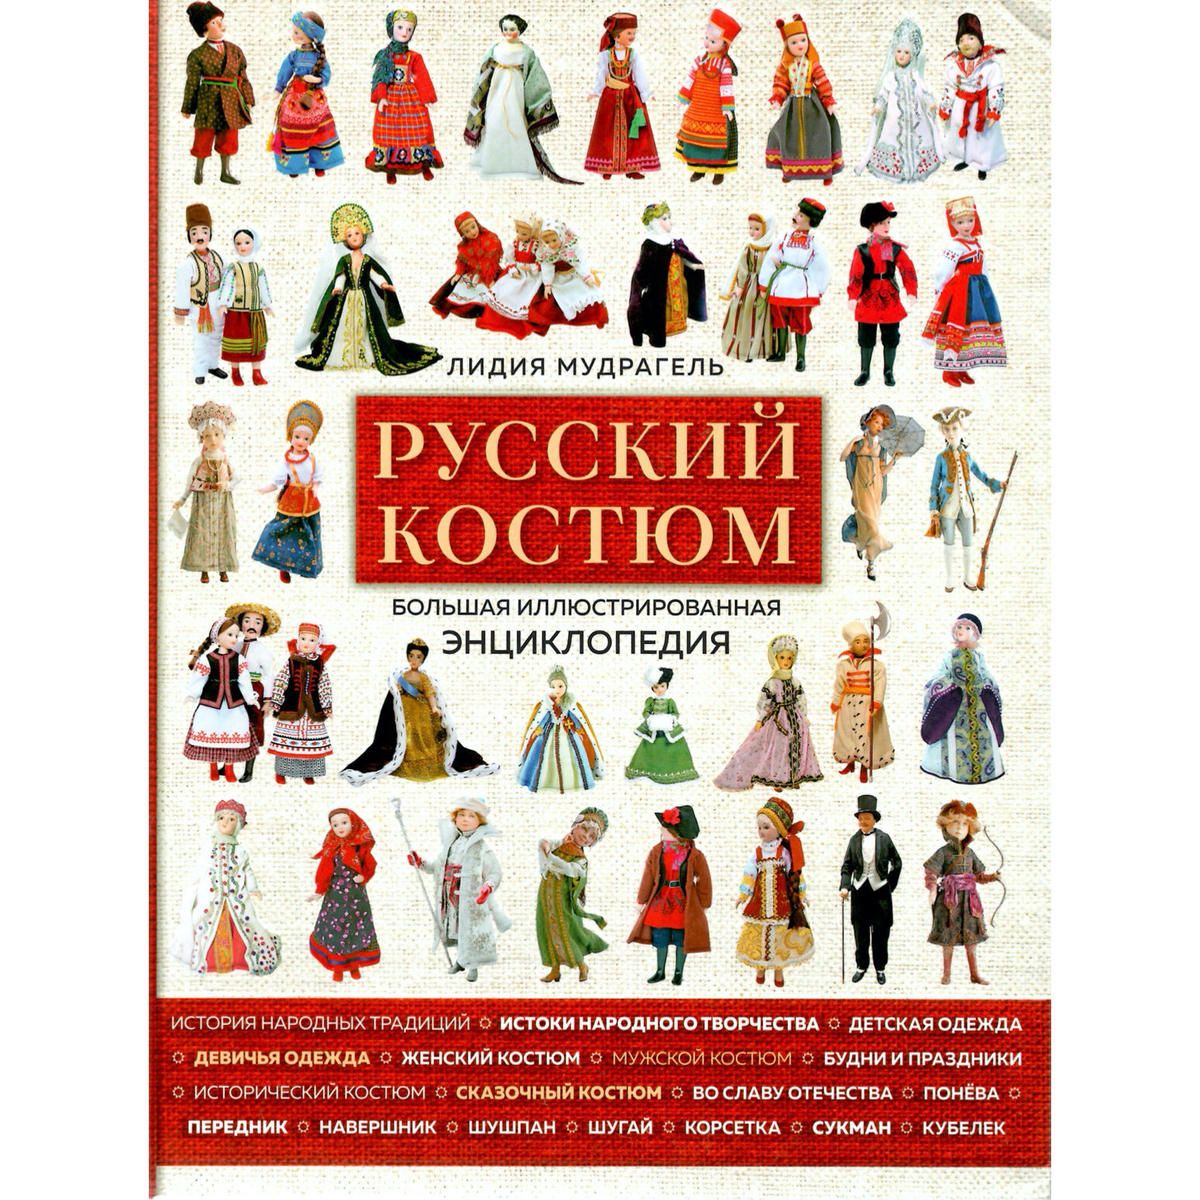 טוויטר Art Book Iskusstvo בטוויטר ロシアの民族衣装大全 可愛らしい人形とイラストでロシアの伝統的な民族衣装 を紹介 ココシニク サラファン ルバシカといった各アイテムを簡単な裁断図を載せながら詳細に解説しています イラストや創作などの資料としても